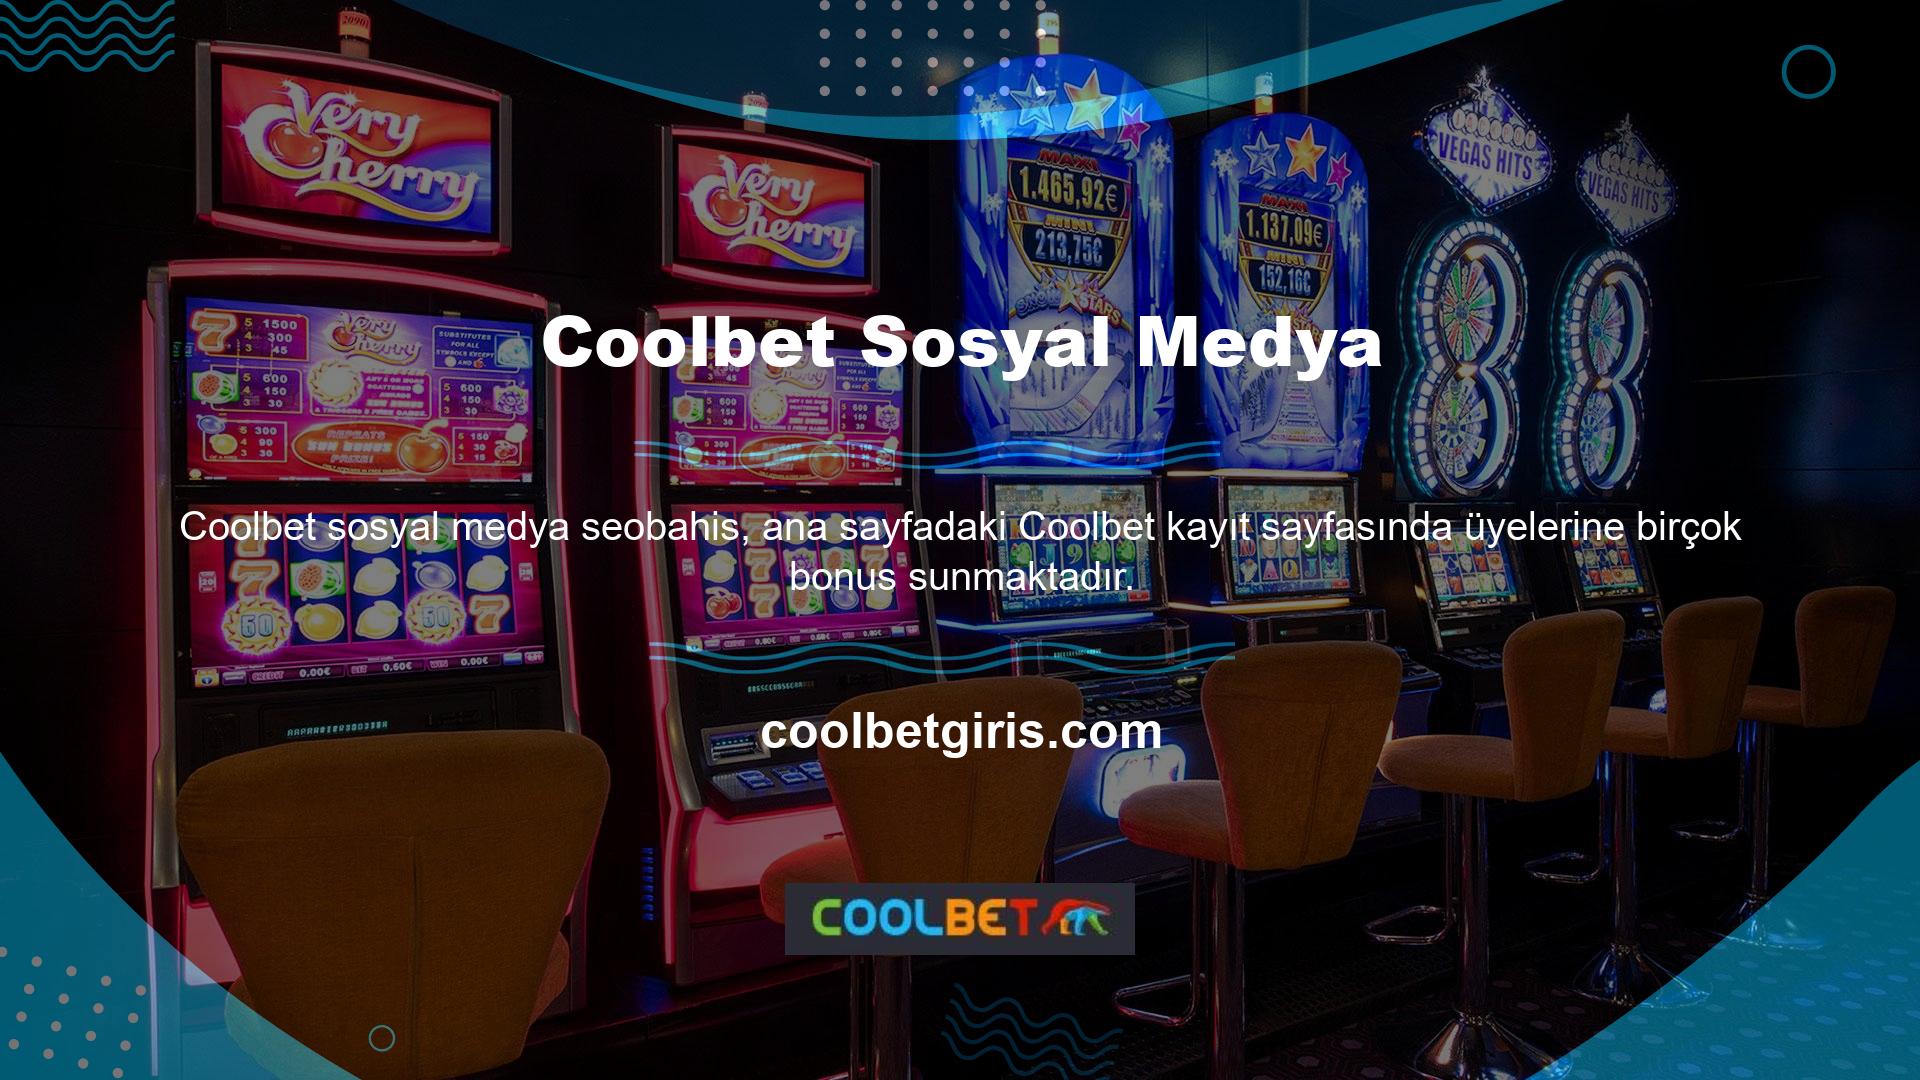 Teknoloji meraklısı Coolbet, aynı zamanda sosyal medya hesaplarını da takip ediyor